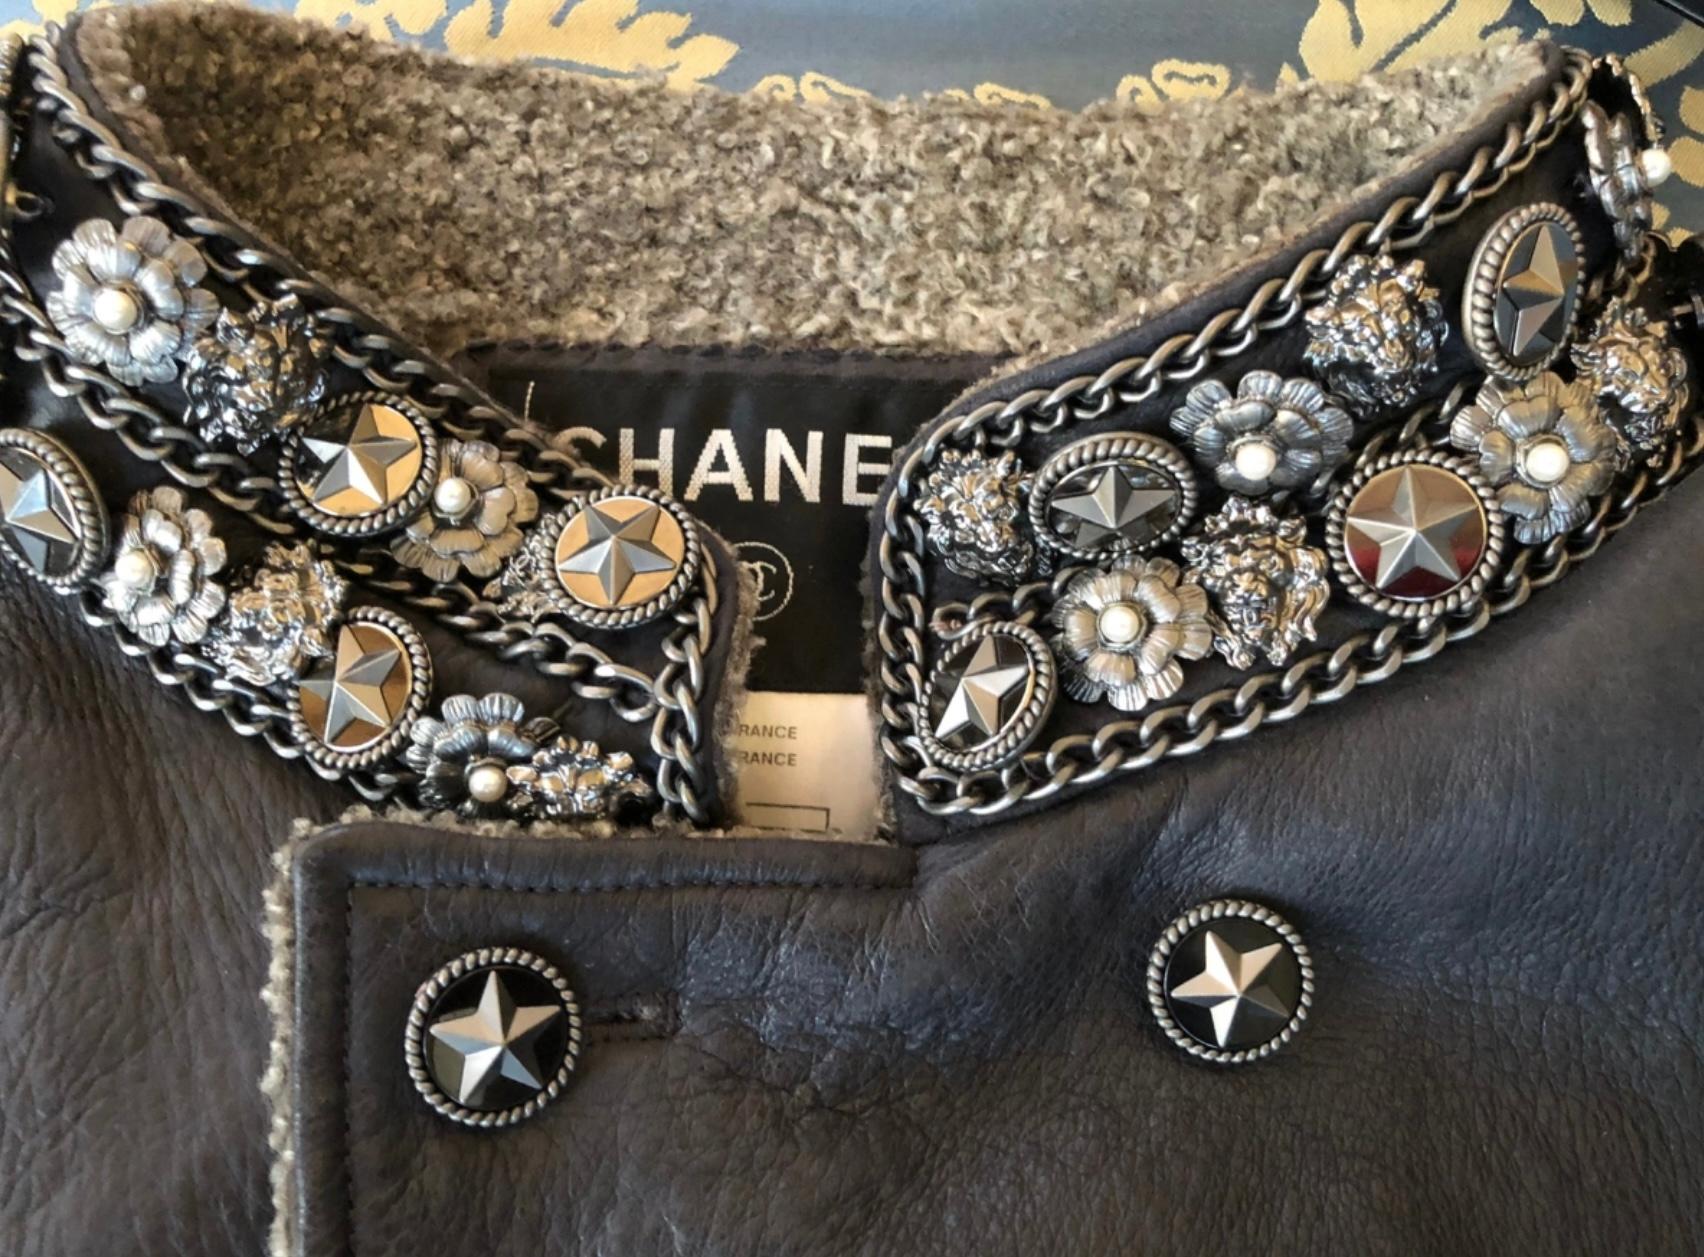 Boutique de plus de 14 000
Veste de collection en shearling noir de Chanel, ornée de superbes bijoux : Camélias, tête de lion : symboles de la maison Chanel.
- garniture de chaîne métallique signature sur l'ensemble du corps
Taille 38 FR. État